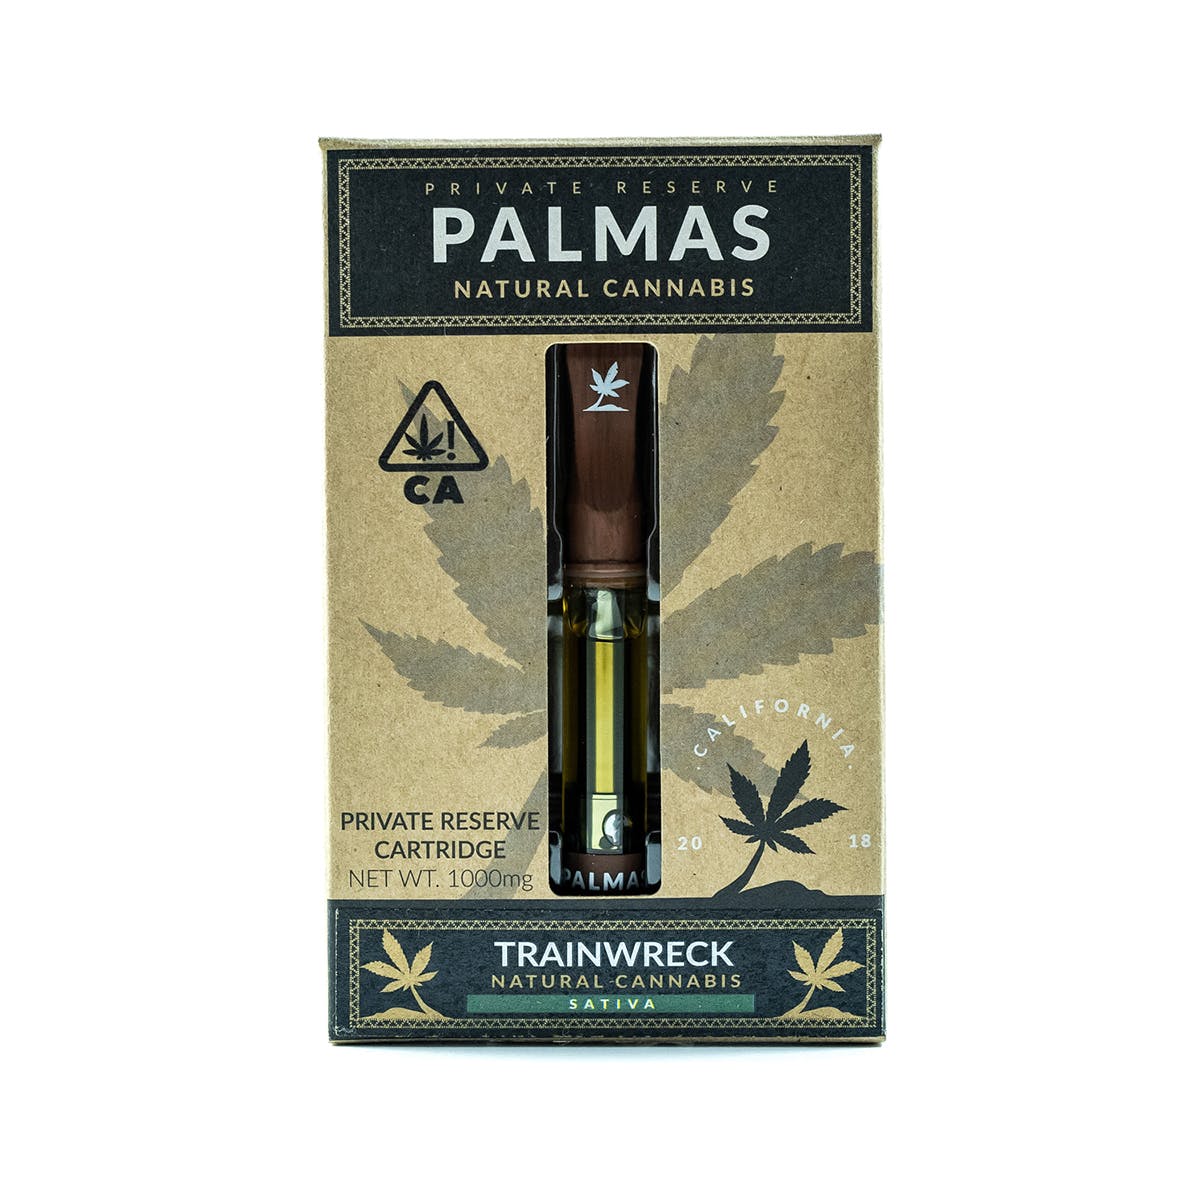 marijuana-dispensaries-kush-club-20-in-los-angeles-palmas-private-reserve-cartridge-trainwreck